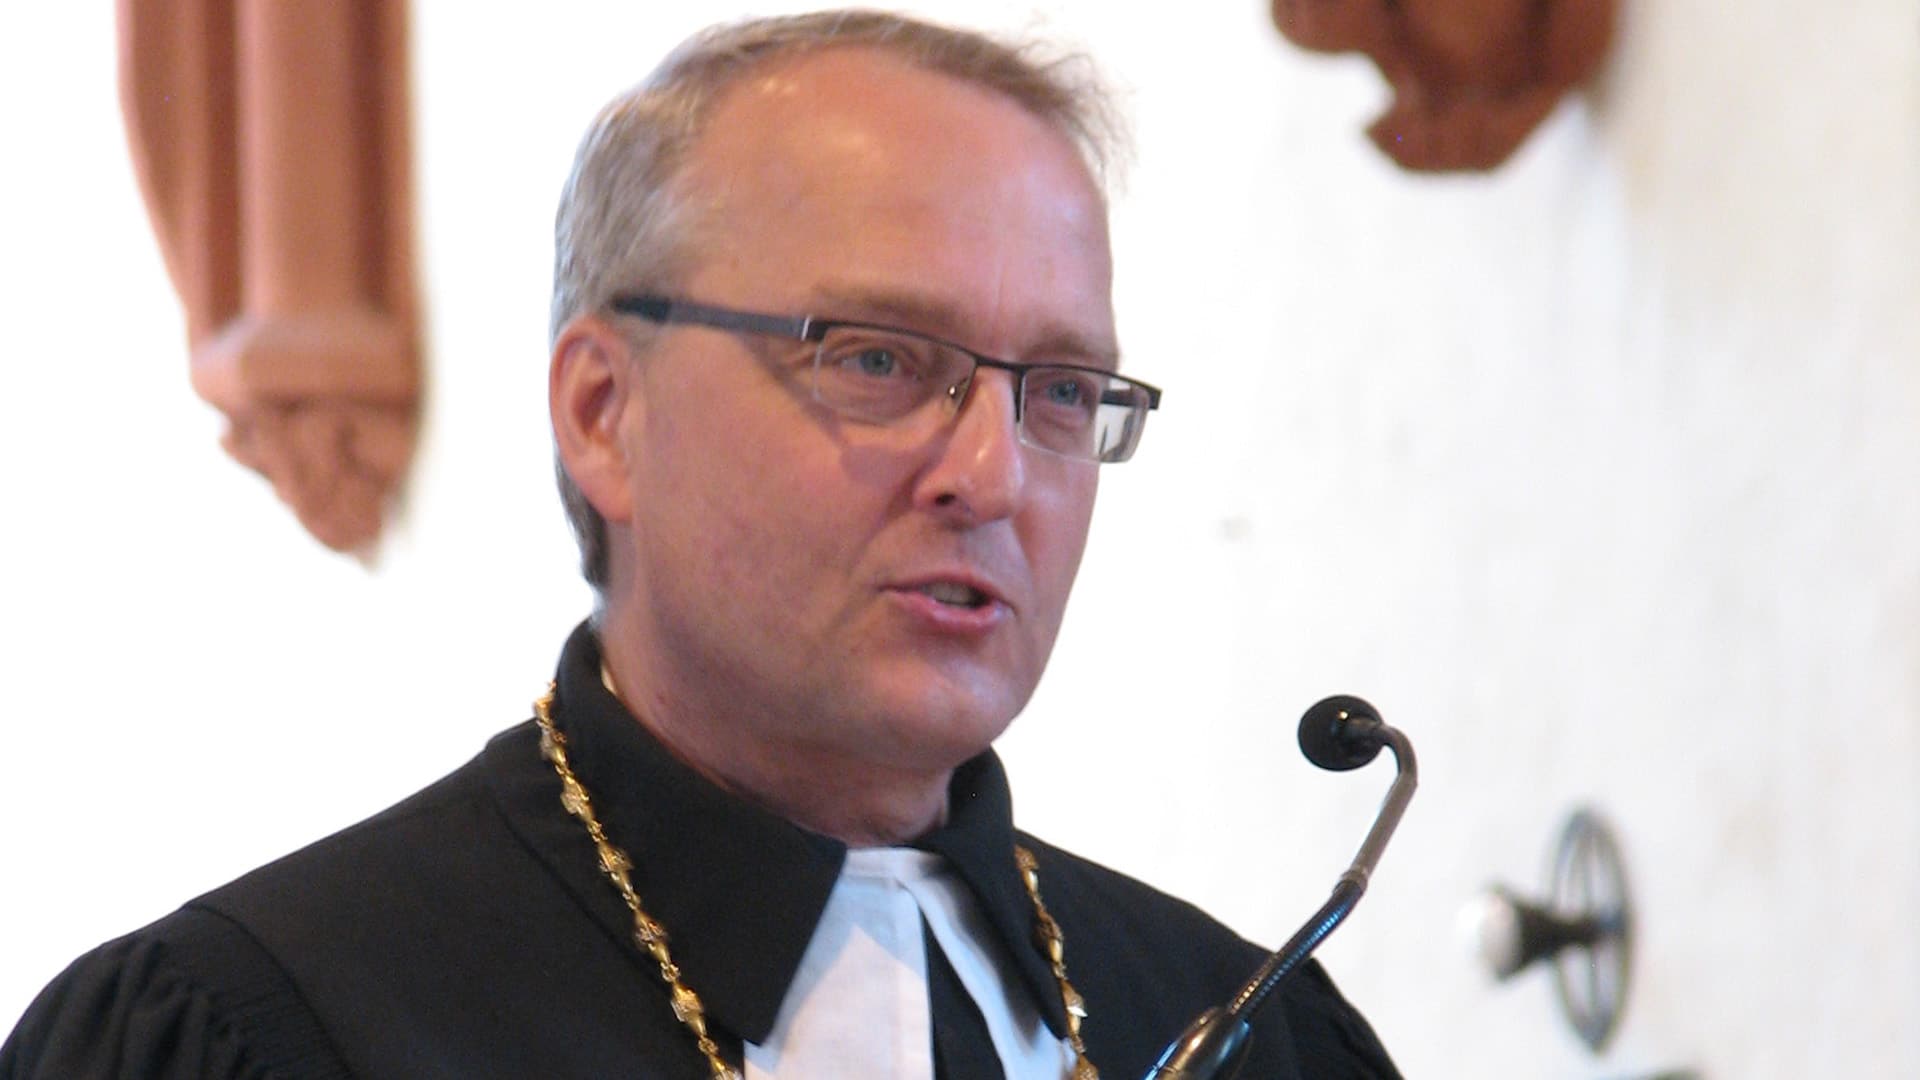 Der sächsische Landesbischof Carsten Rentzing steht in der Kritik, weil er Mitglied in einer schlagenden Verbindung ist und als Student Texte in einer rechten Zeitschrift veröffentlicht hatte